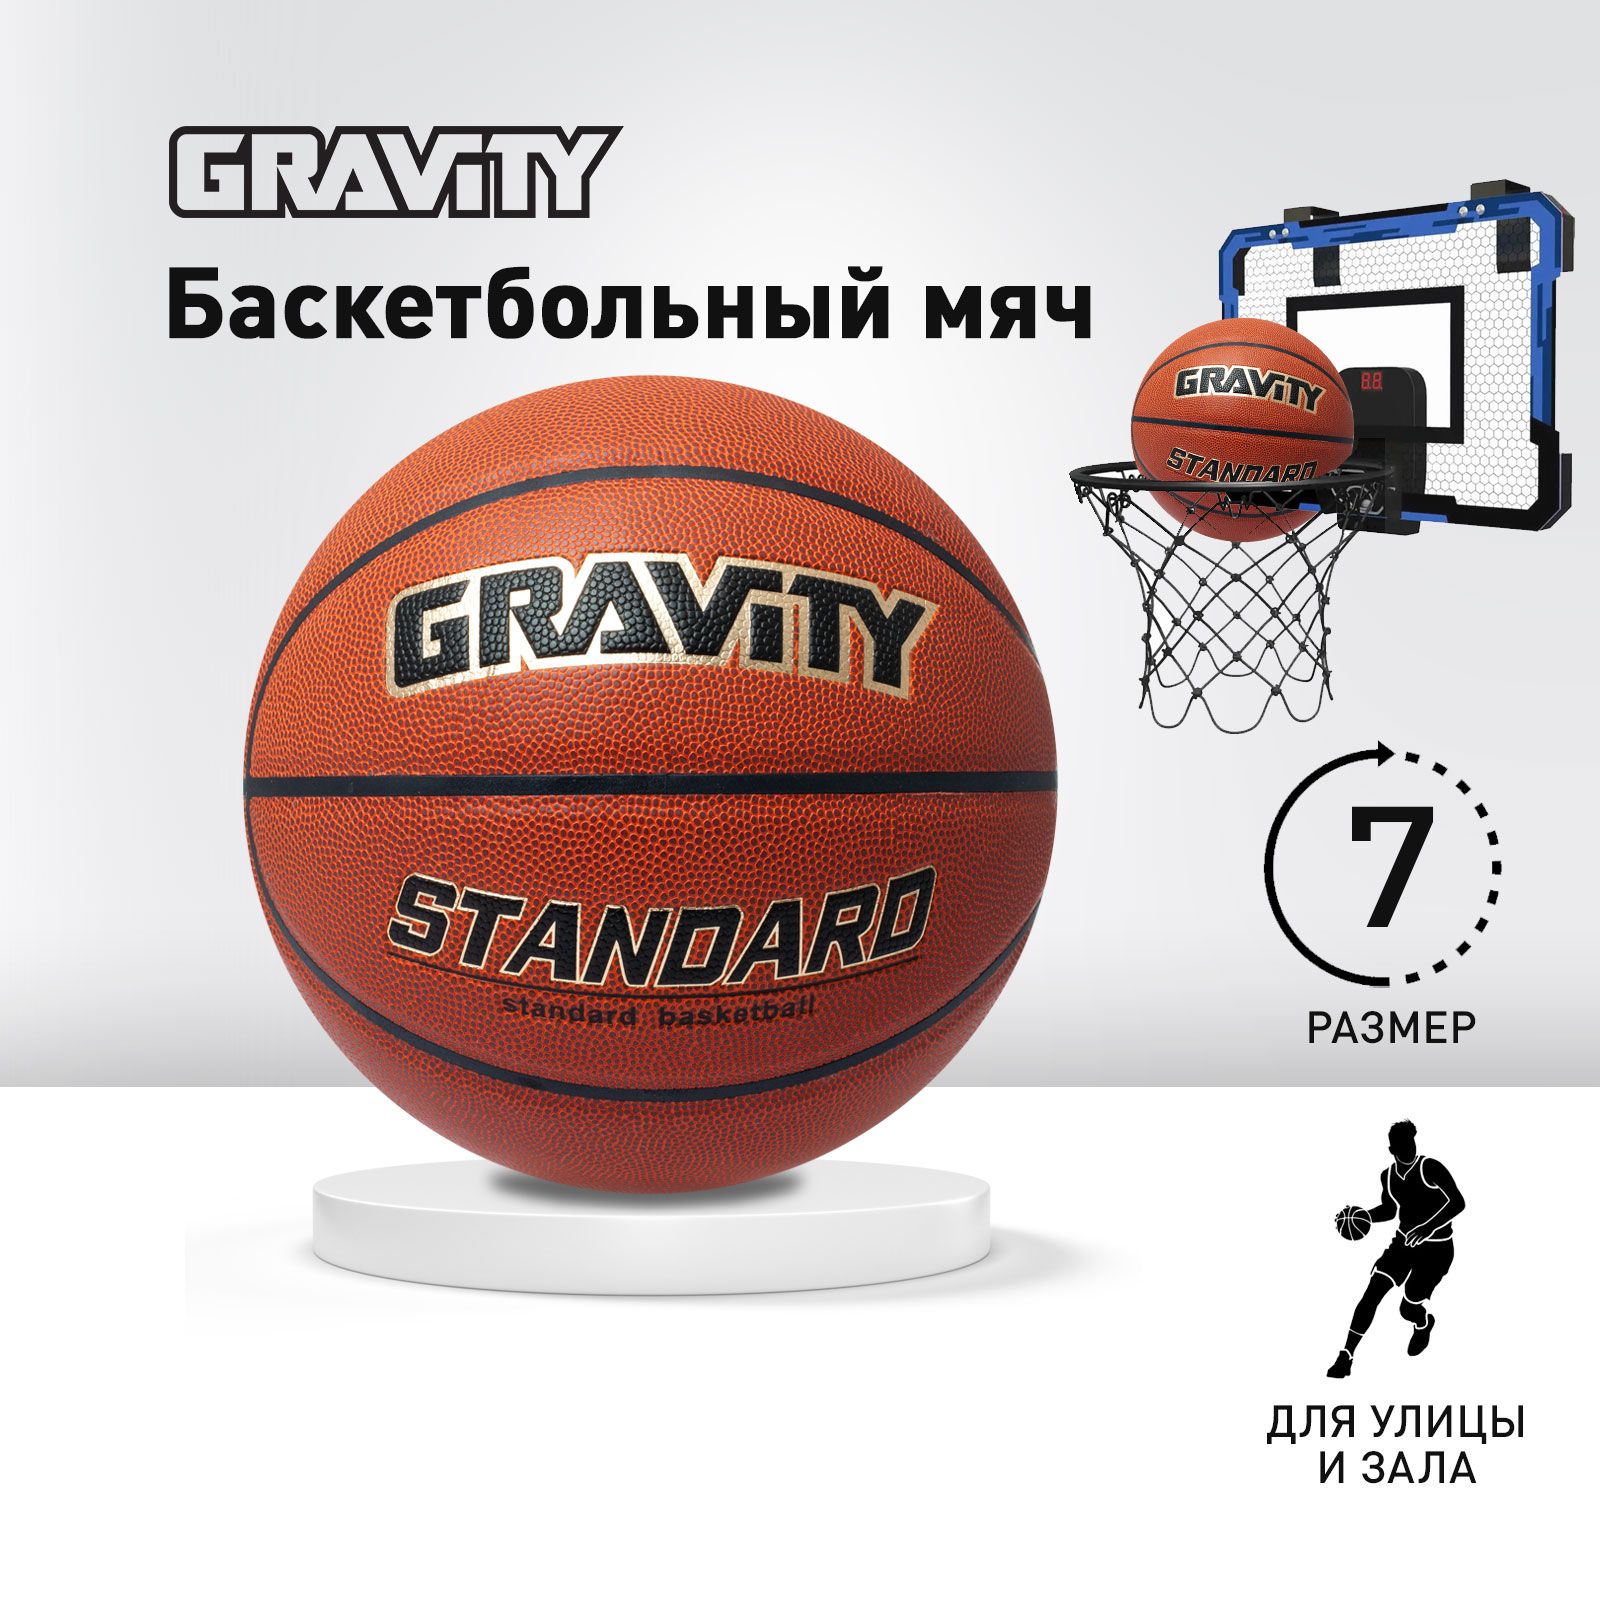 Баскетбольный мяч Gravity STANDARD, тренировочный, размер 7